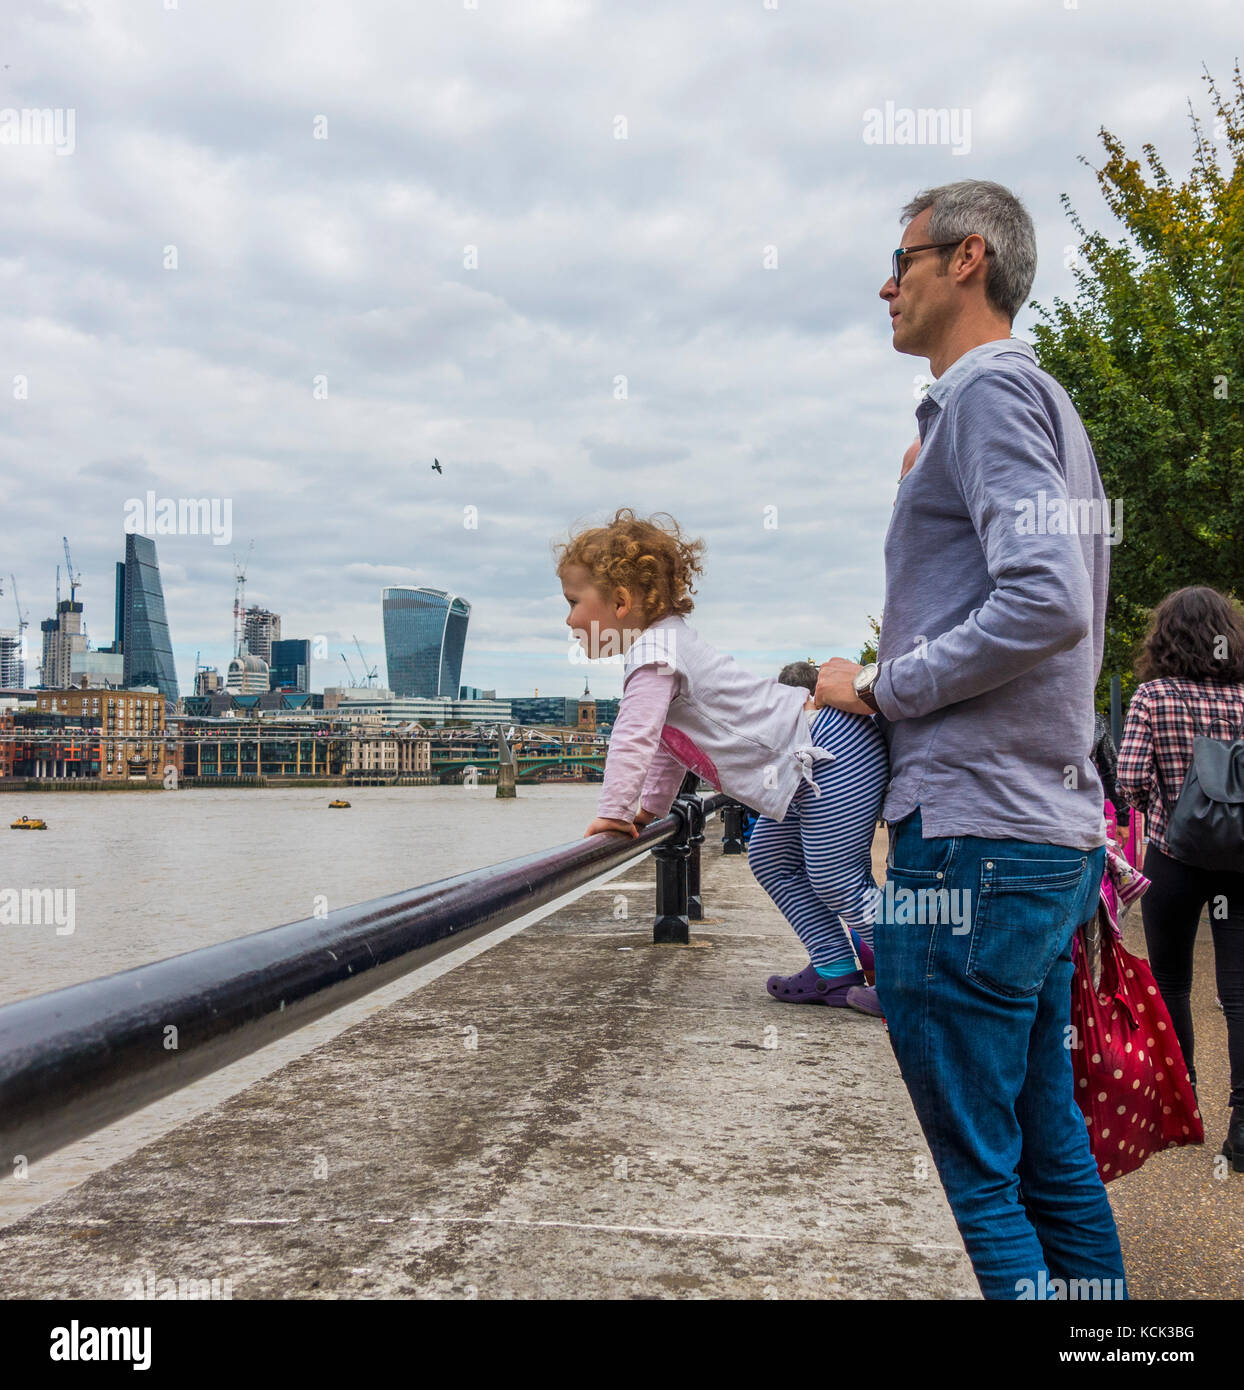 Einen mittleren gealterten Vater hielt seinen lockigen Haaren junge Tochter, greifen einen Sicherheitsbügel, mit Blick auf die Themse, South Bank, London, England, UK. Stockfoto